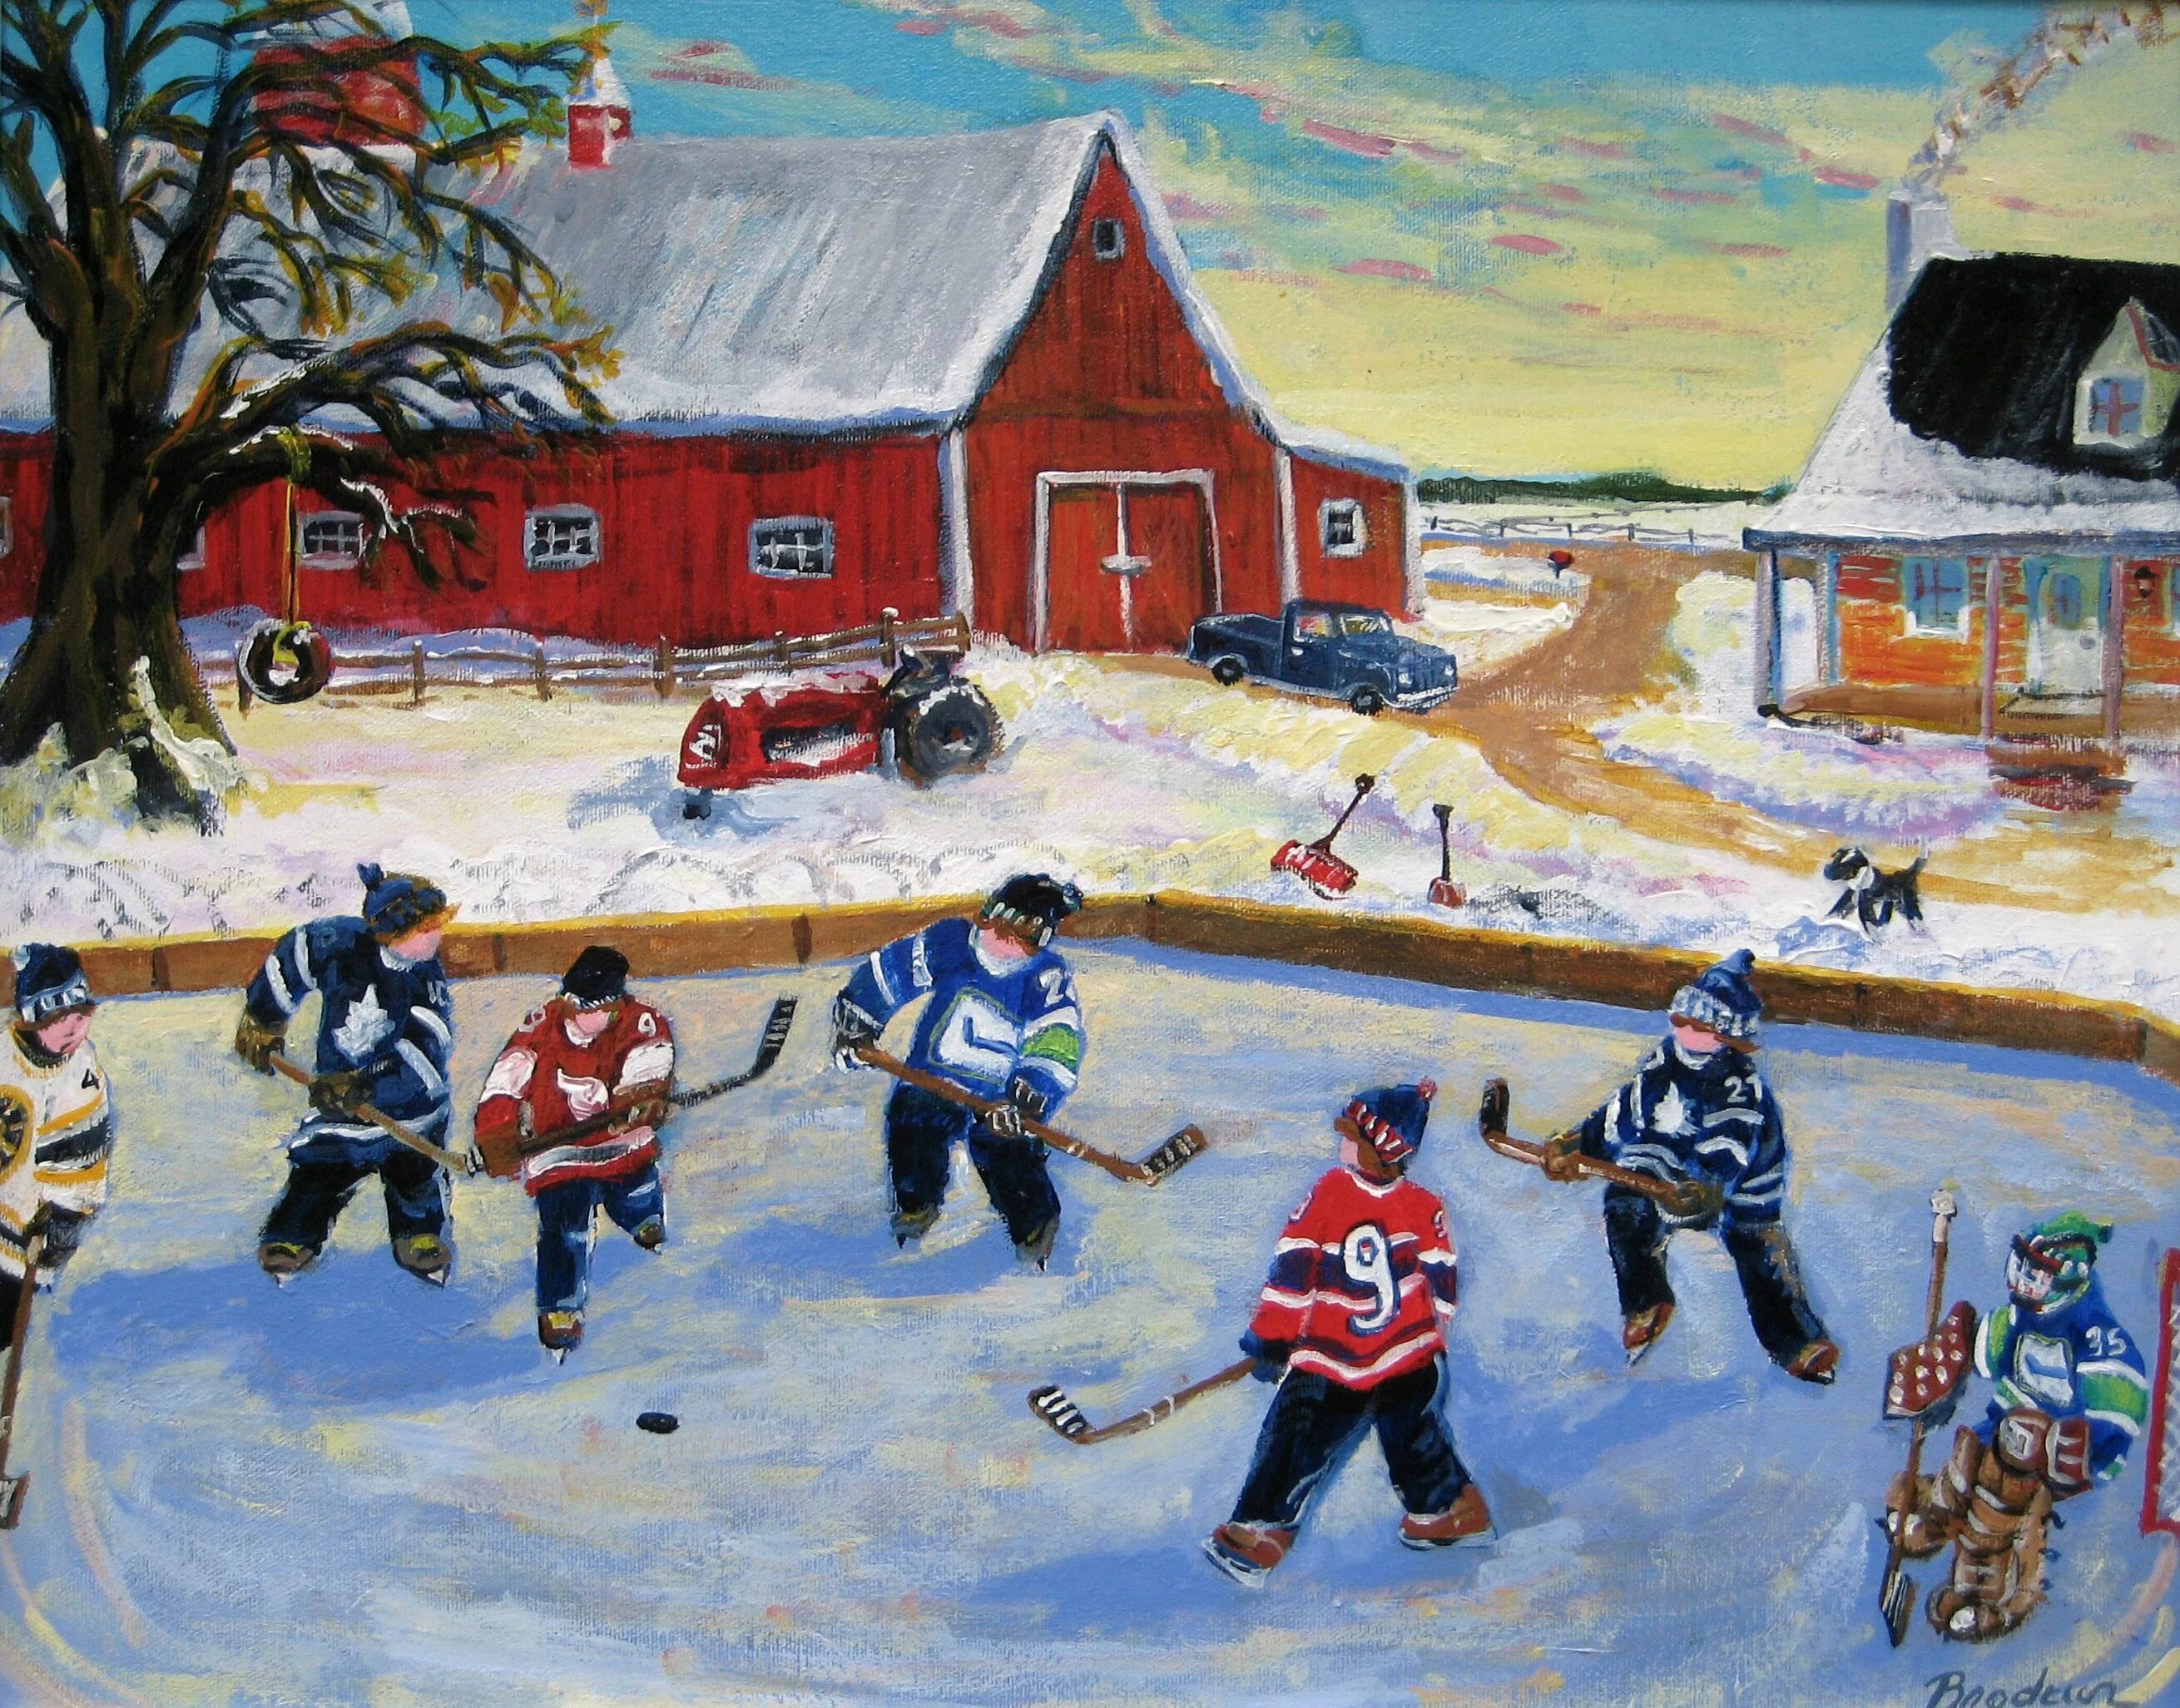 Painting играть. Хоккей живопись. Хоккей картины художников. Живопись хоккей во дворе. Картина зимние забавы хоккей.